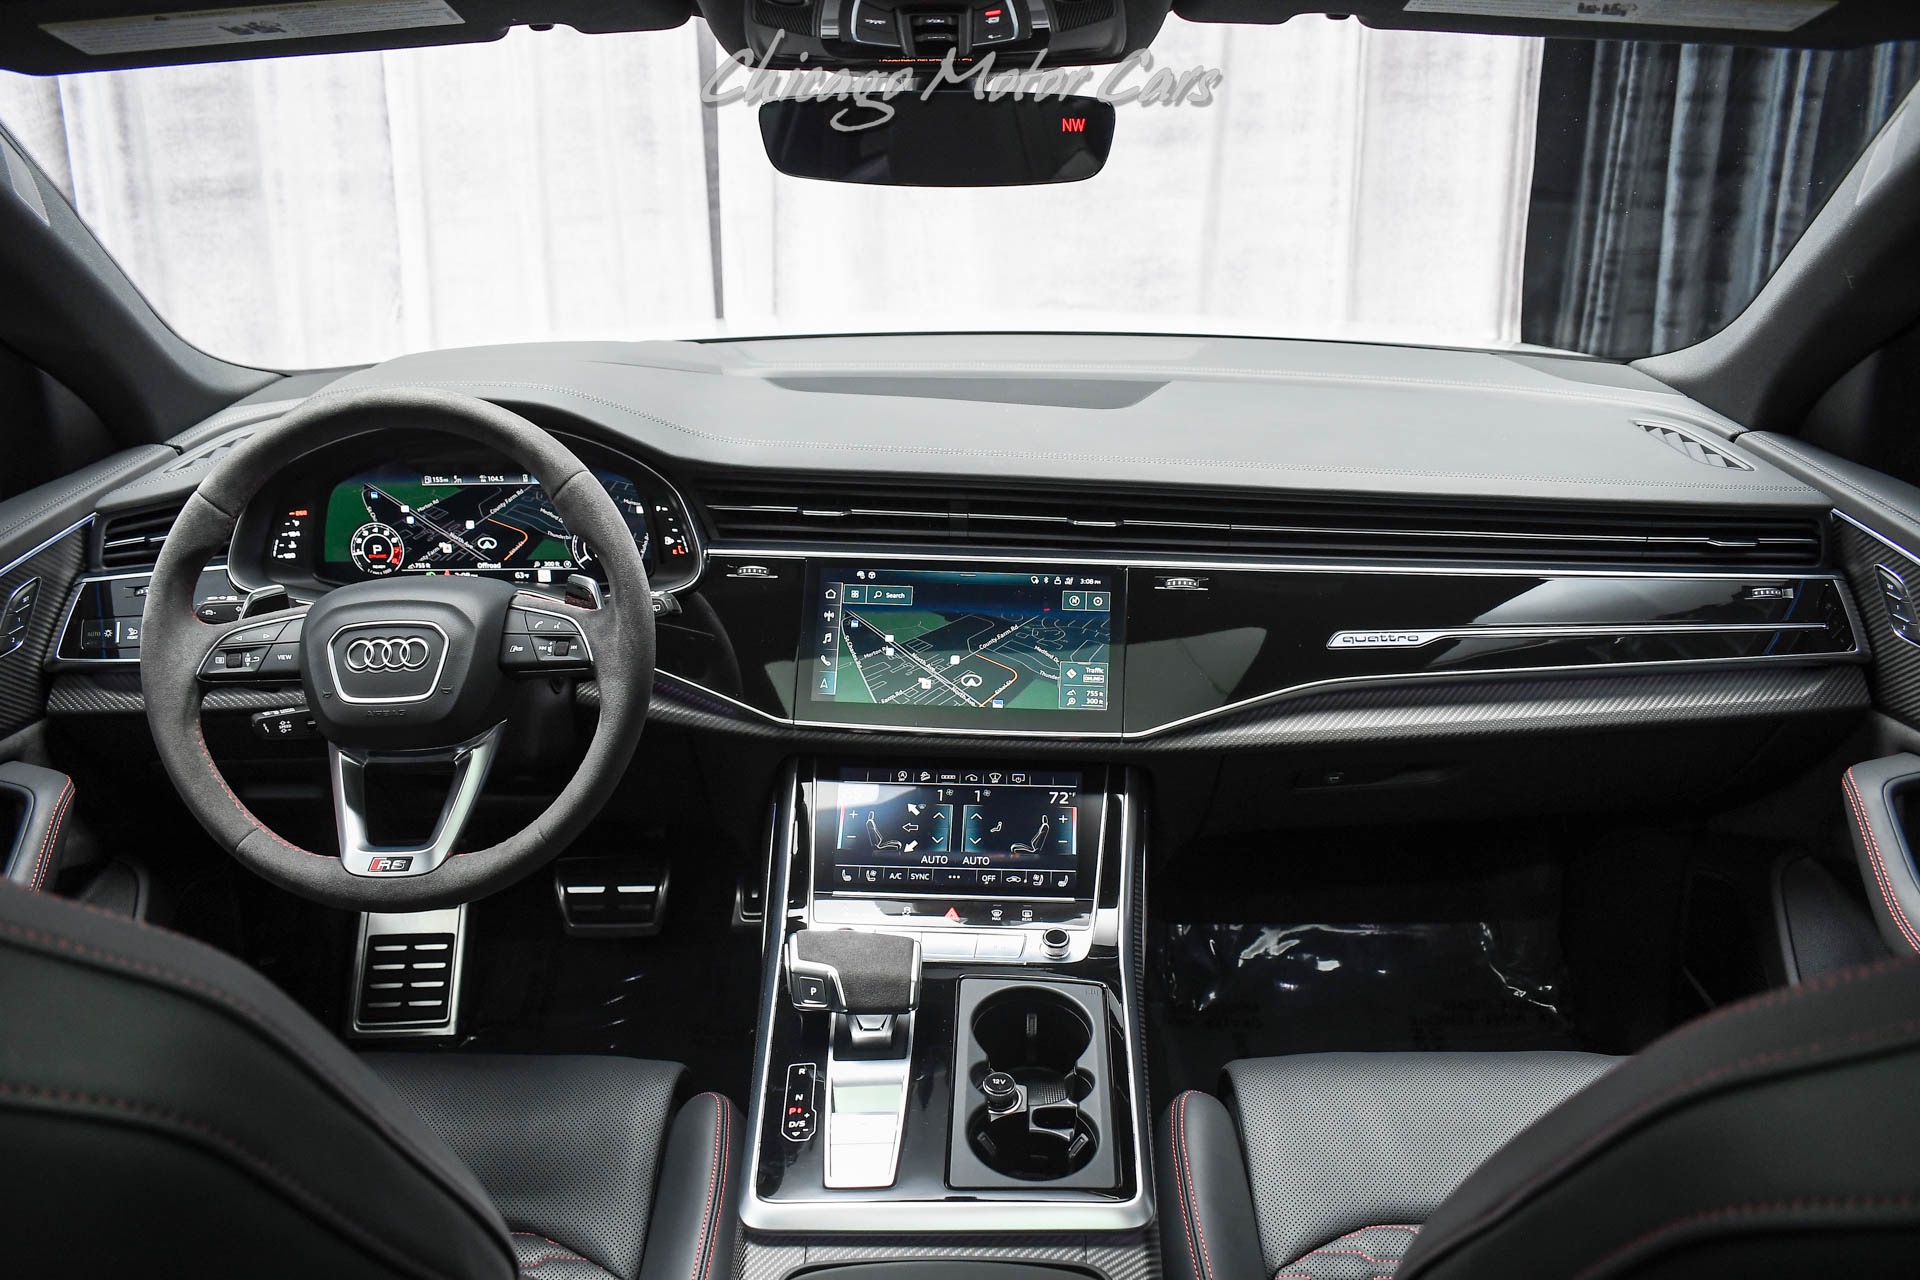 Used-2022-Audi-RS-Q8-40T-quattro-SUV-Nardo-Grey-Carbon-Optic-Pkg-RS-Design-Pkg-Executive-Pkg